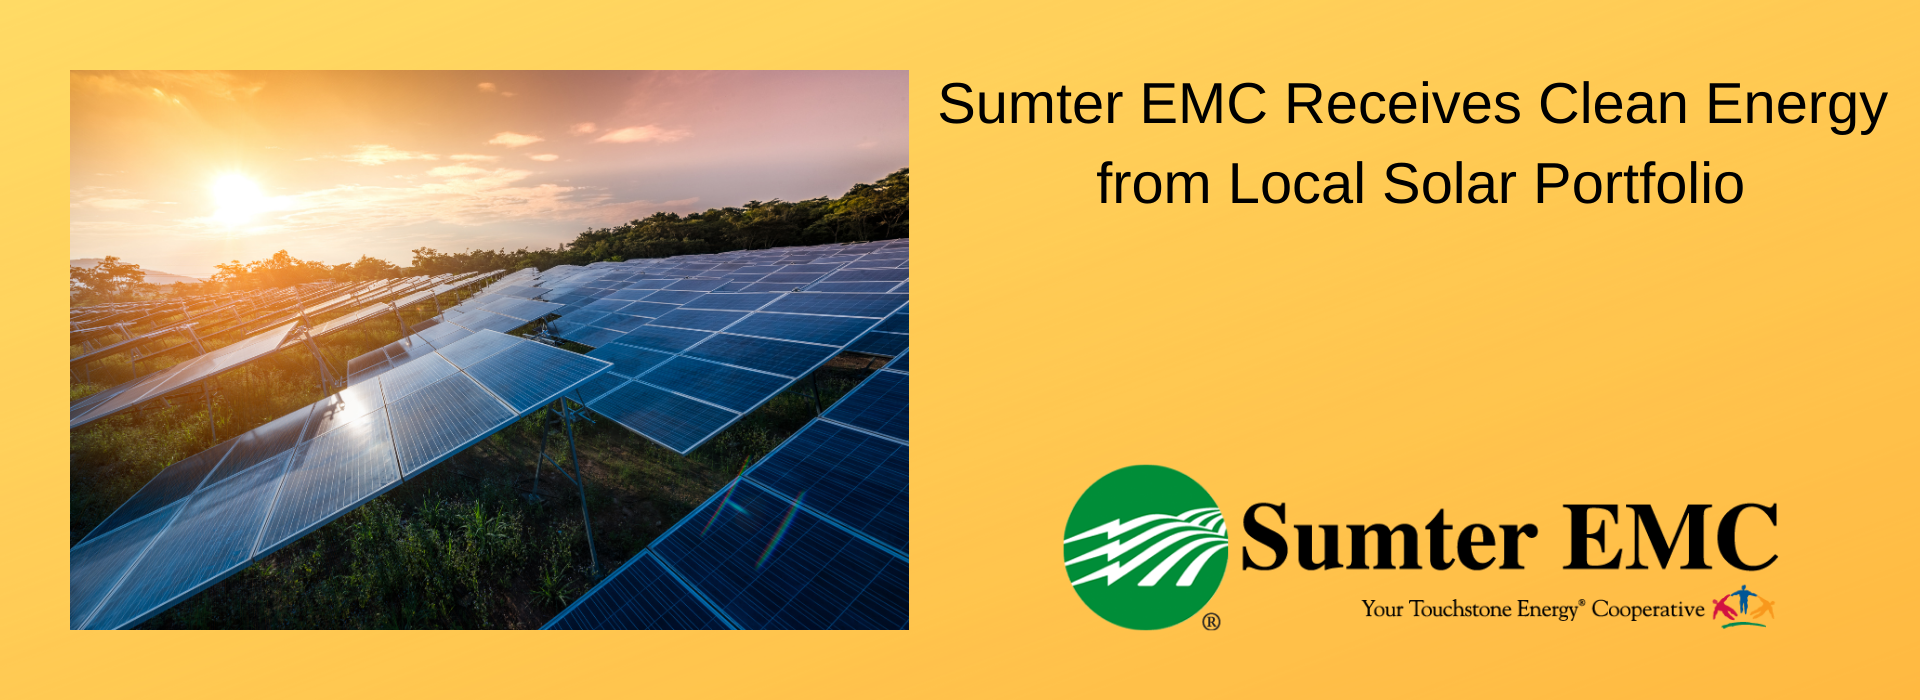 Sumter EMC Receives Clean Energy from Local Solar Portfolio